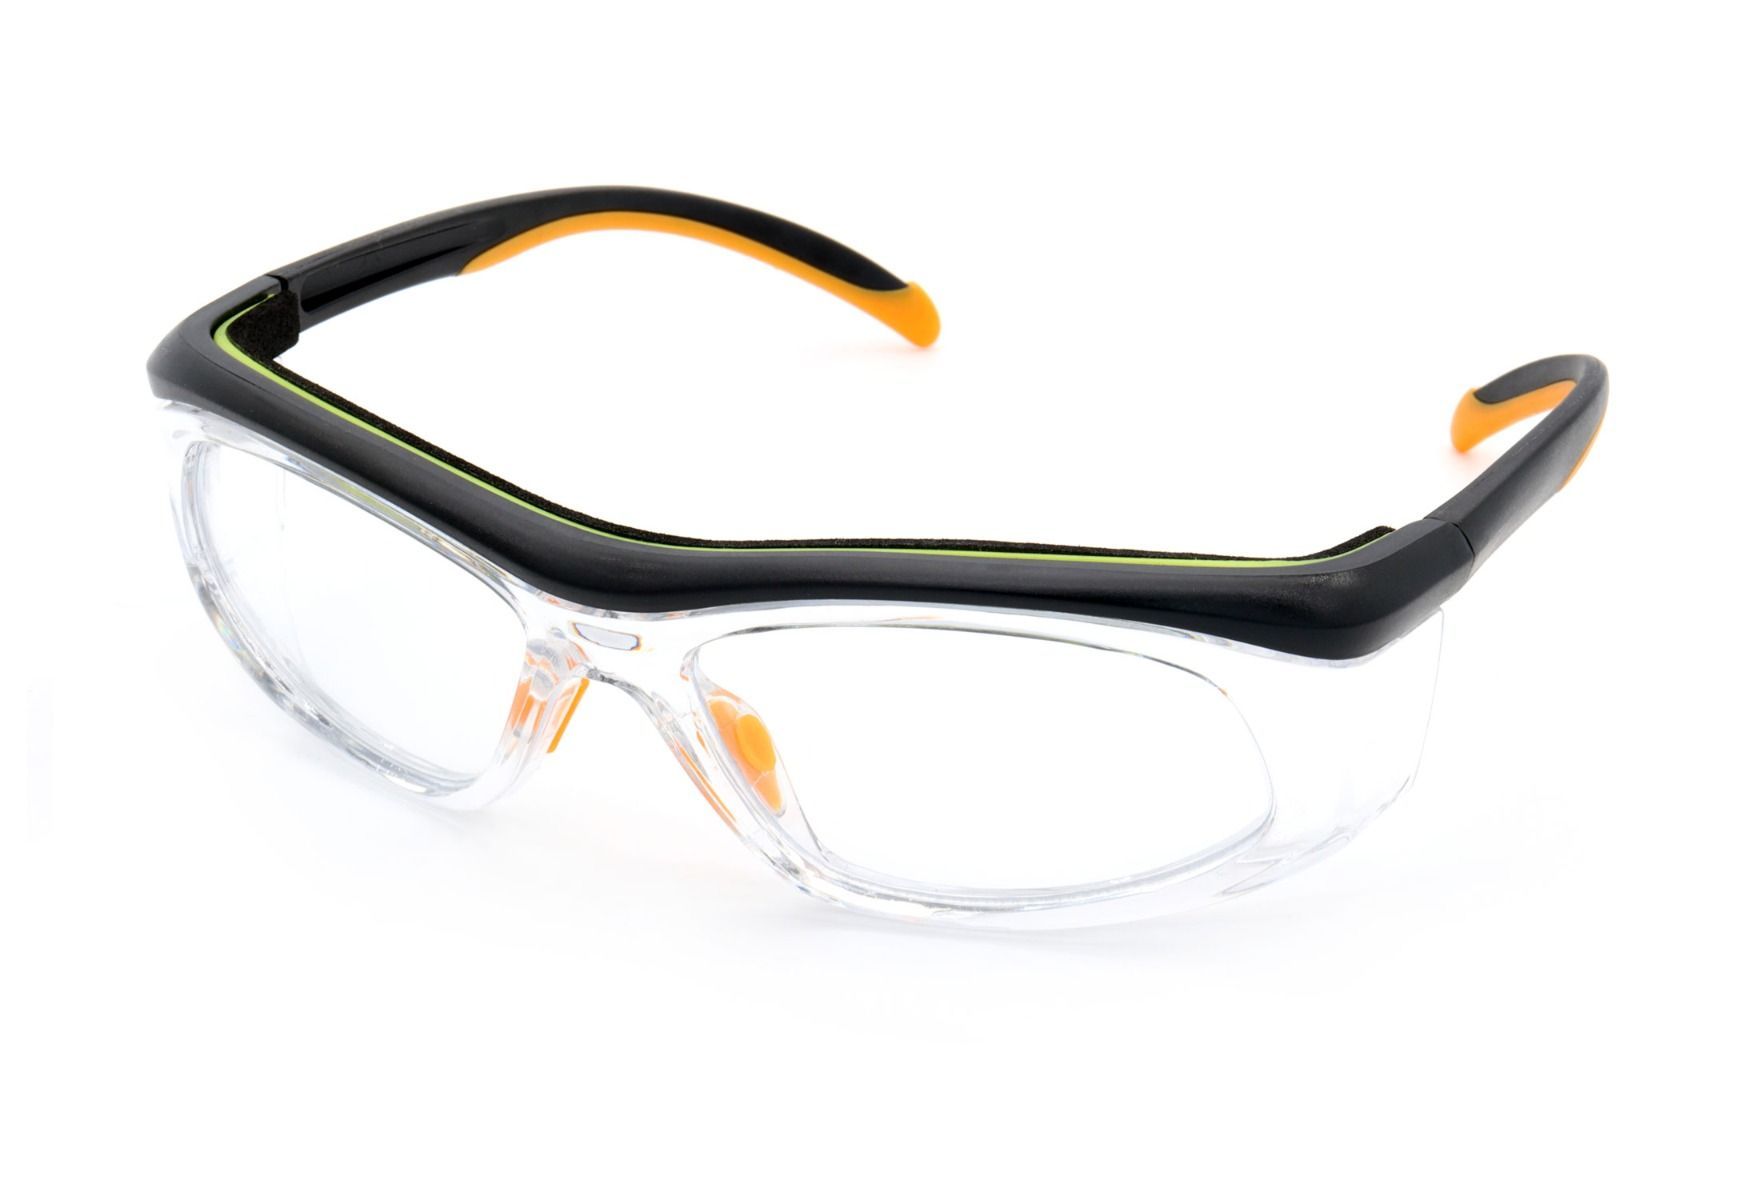 Vernebriller med styrke fra eo Protect - Tito - Multifarget